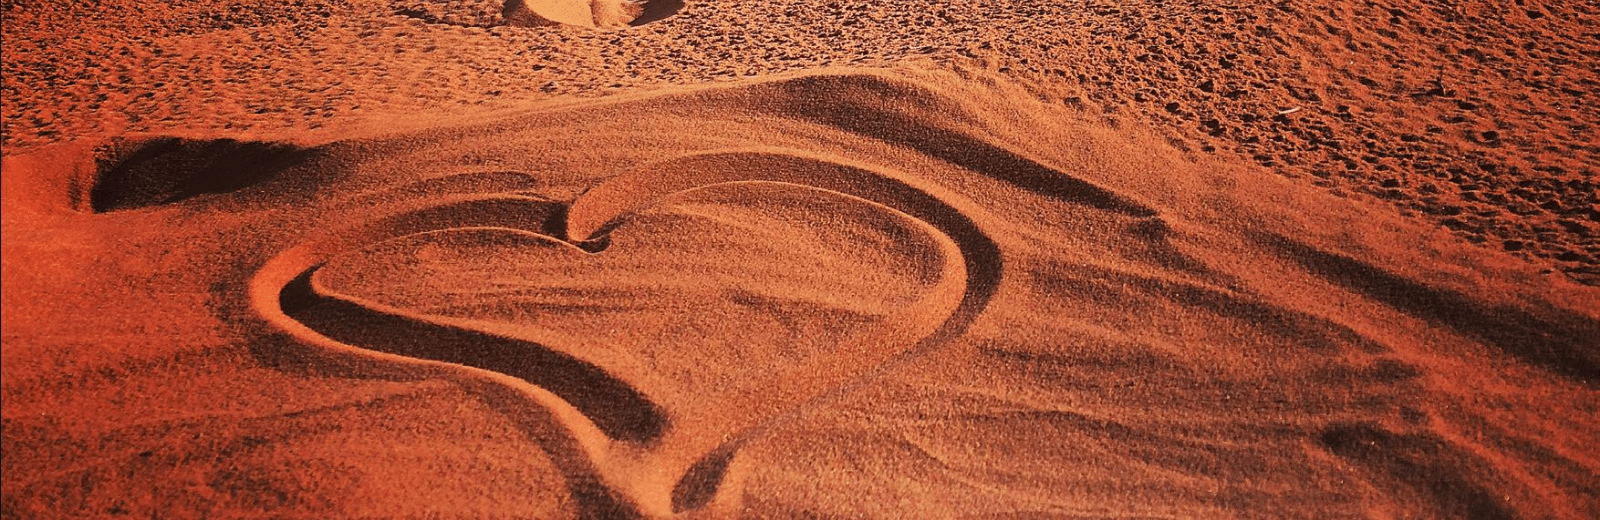 Retraite in de woestijn, Wadi Rum, Jordanië. Jordan Desert Journeys